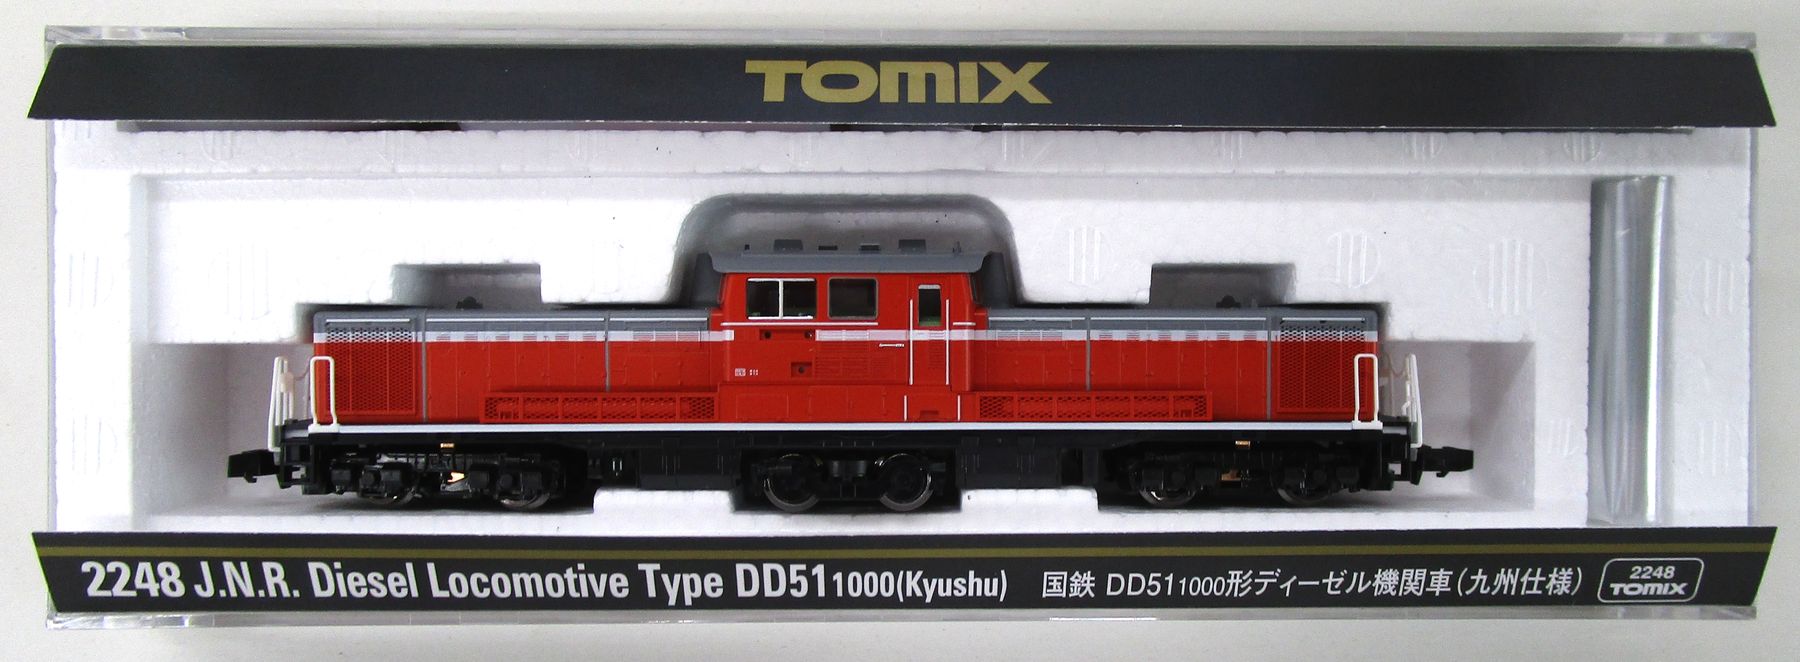 公式]鉄道模型(2248国鉄 DD51-1000形ディーゼル機関車 (九州仕様))商品